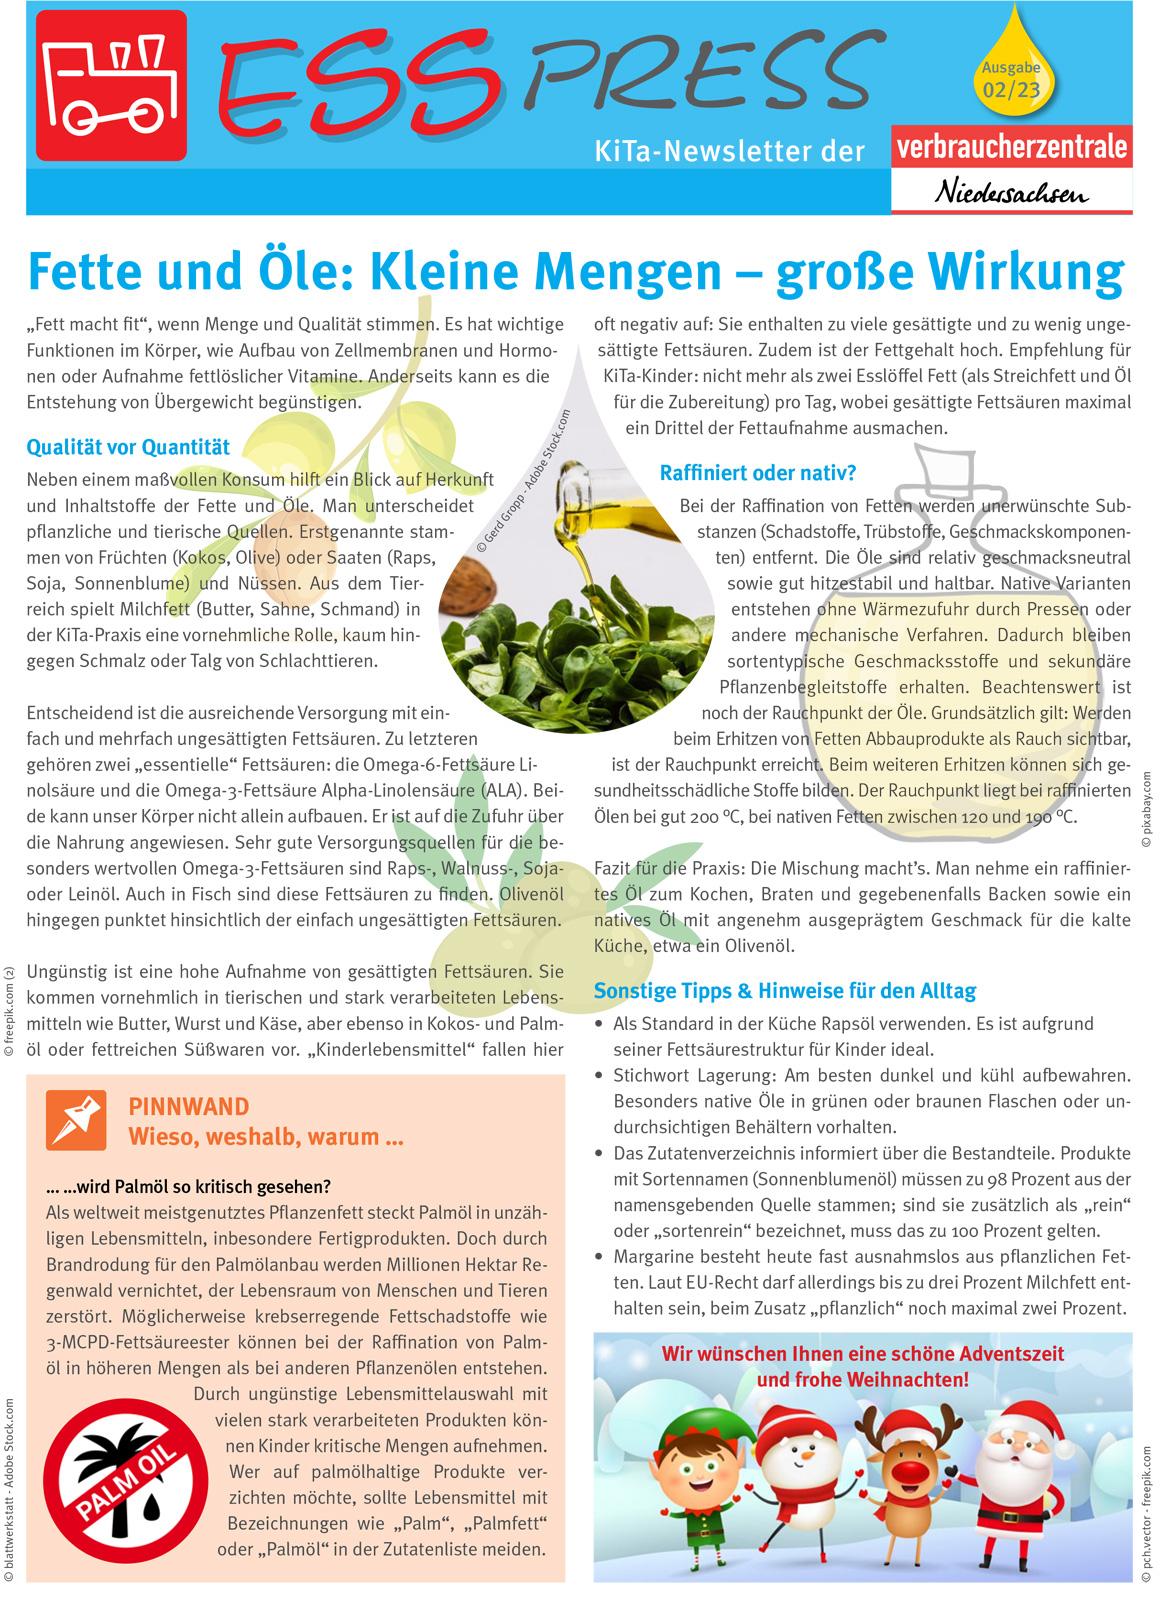 Erste Seite des Kita Newsletters EssPress der Verbraucherzentrale Niedersachsen